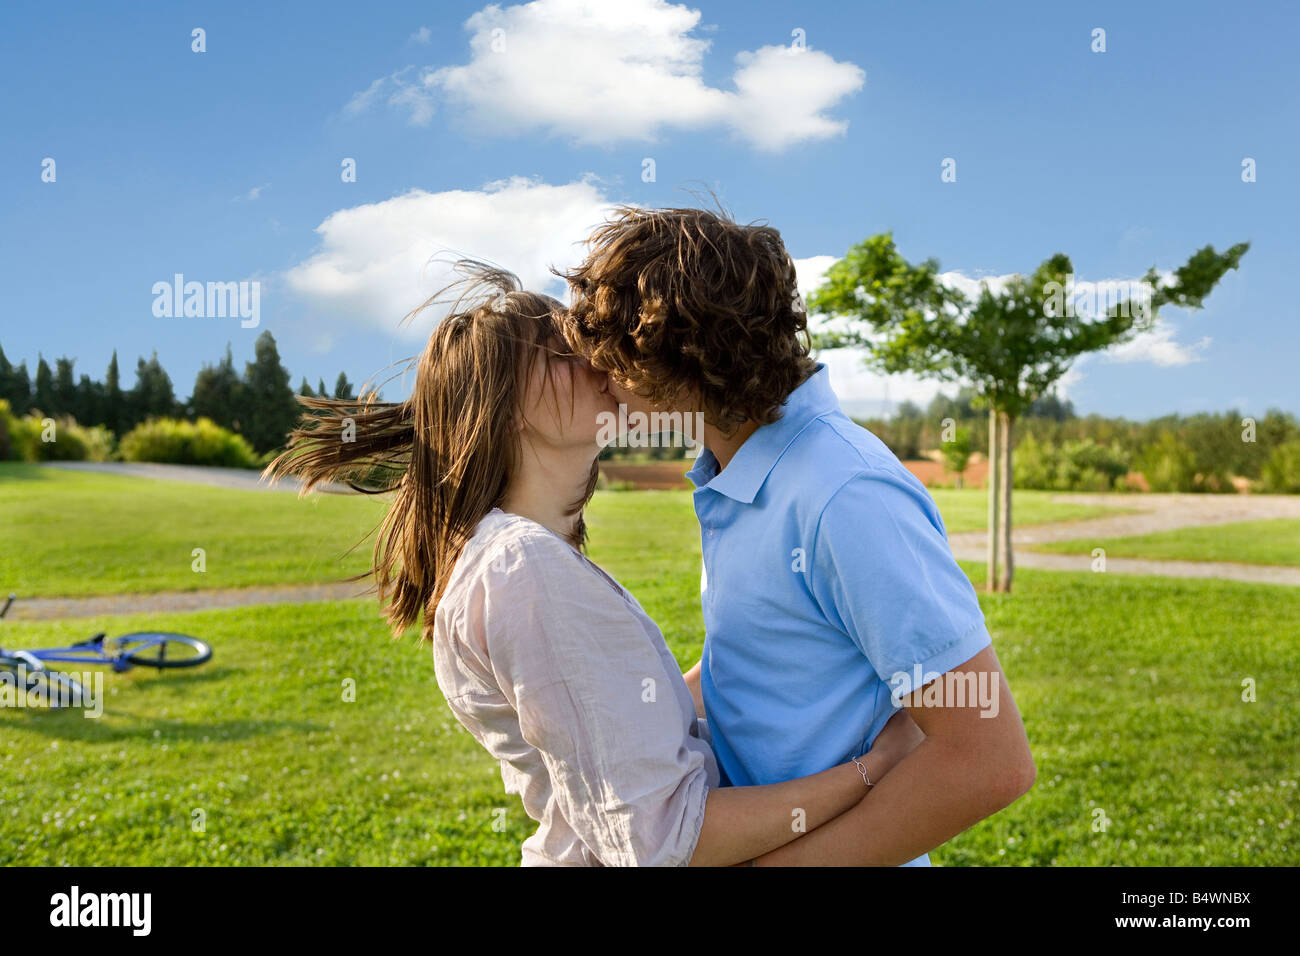 Teen Liebhaber küssen im park Stockfotografie - Alamy